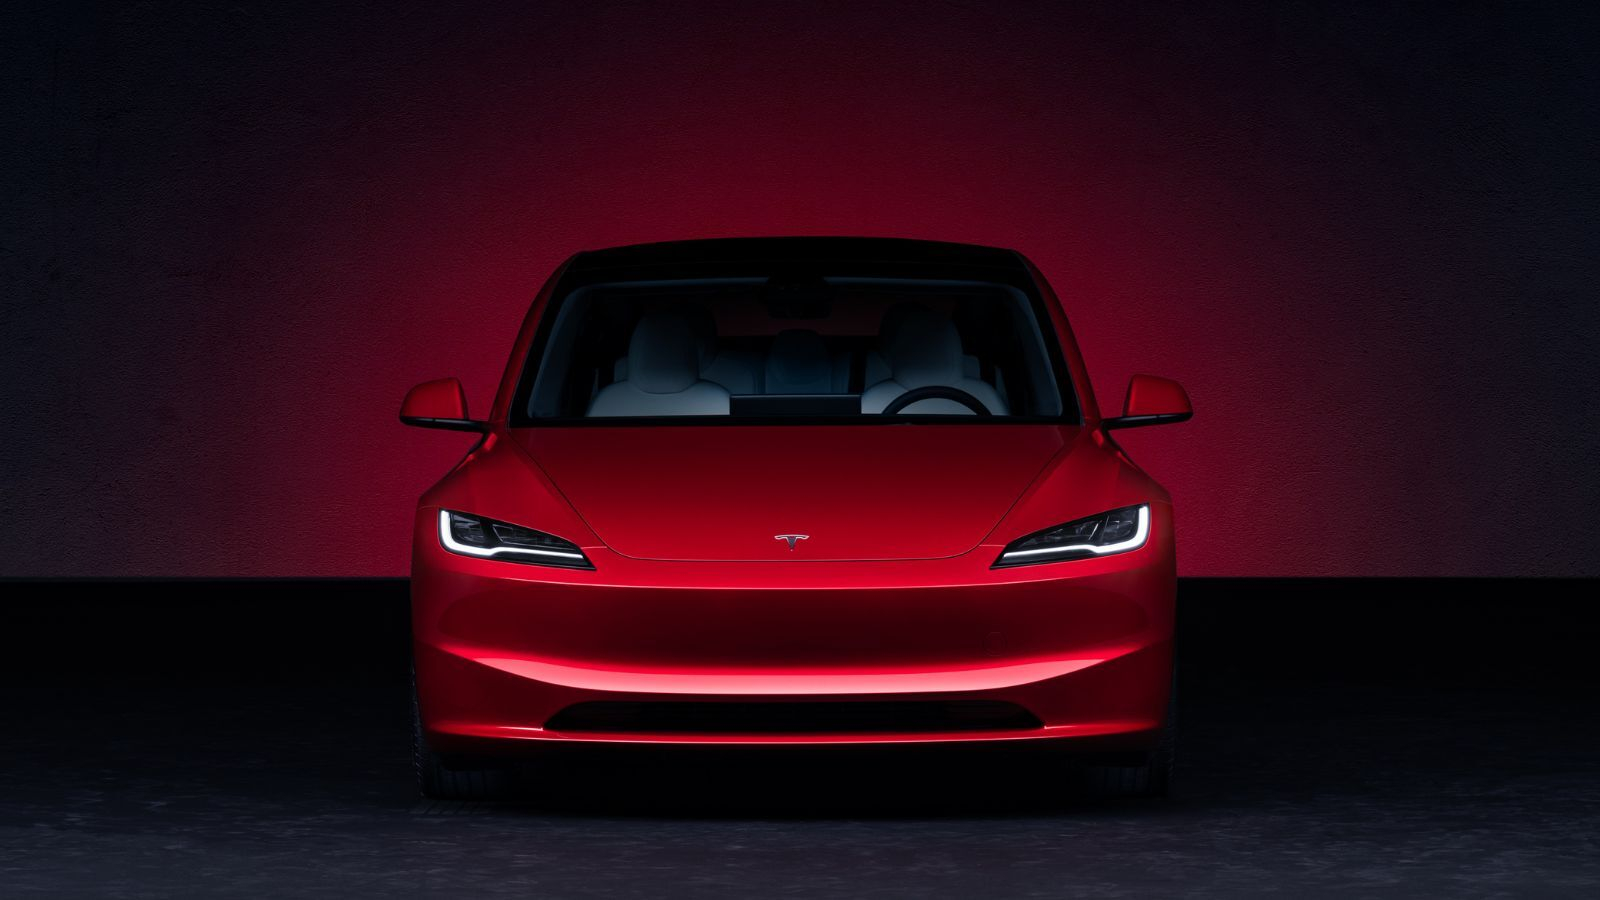 Erstes Foto des Highland-Projekts Tesla Model 3 - GREEN DRIVE NEWS